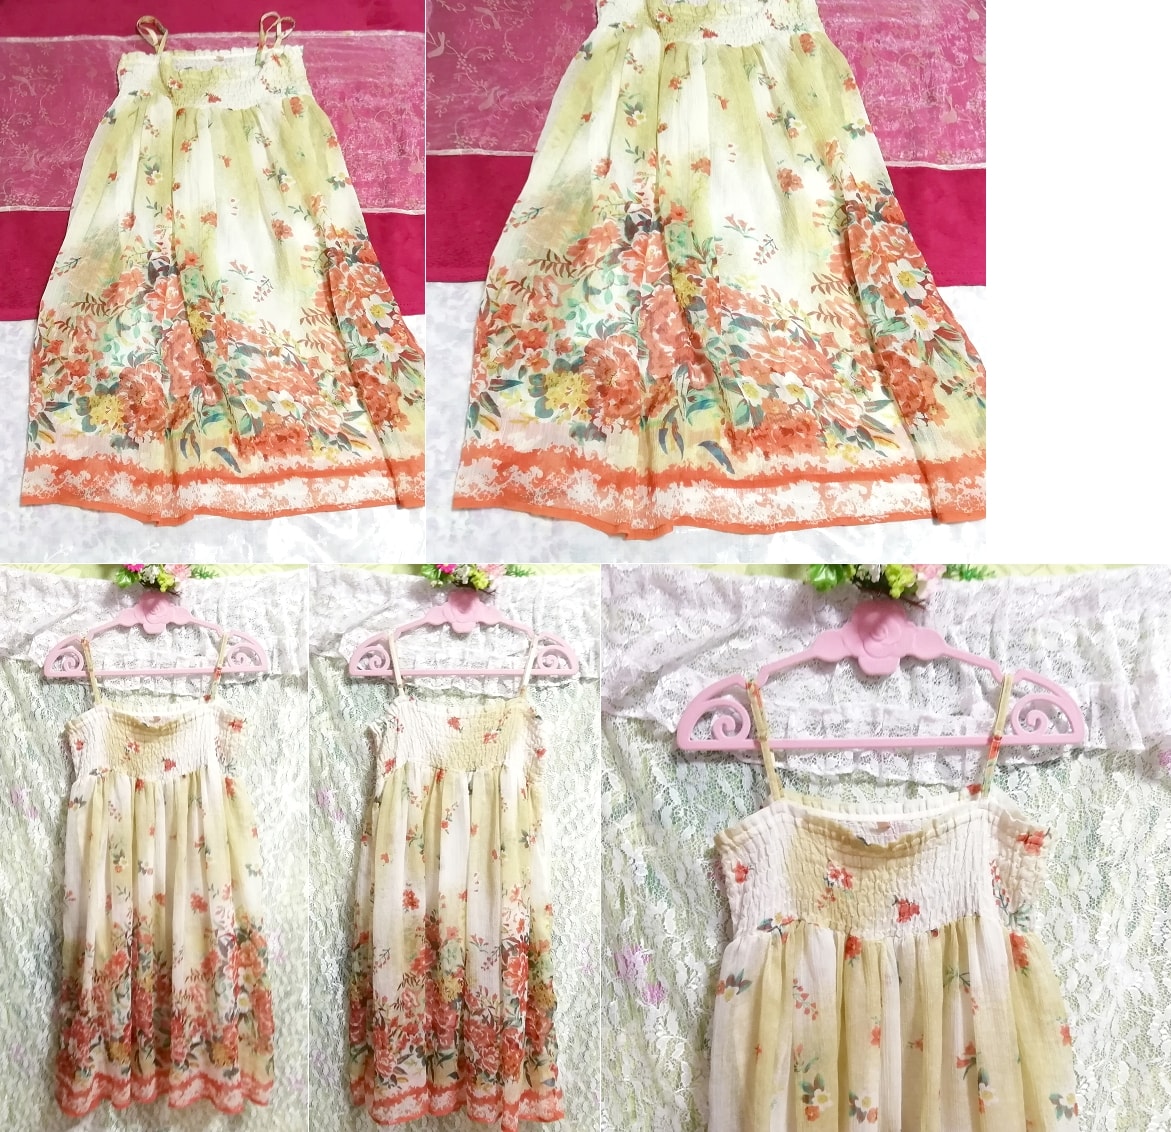 Made in India 시폰 아마센 꽃무늬 네글리제 나이트가운 캐미솔 드레스, 무릎길이 스커트, m 사이즈